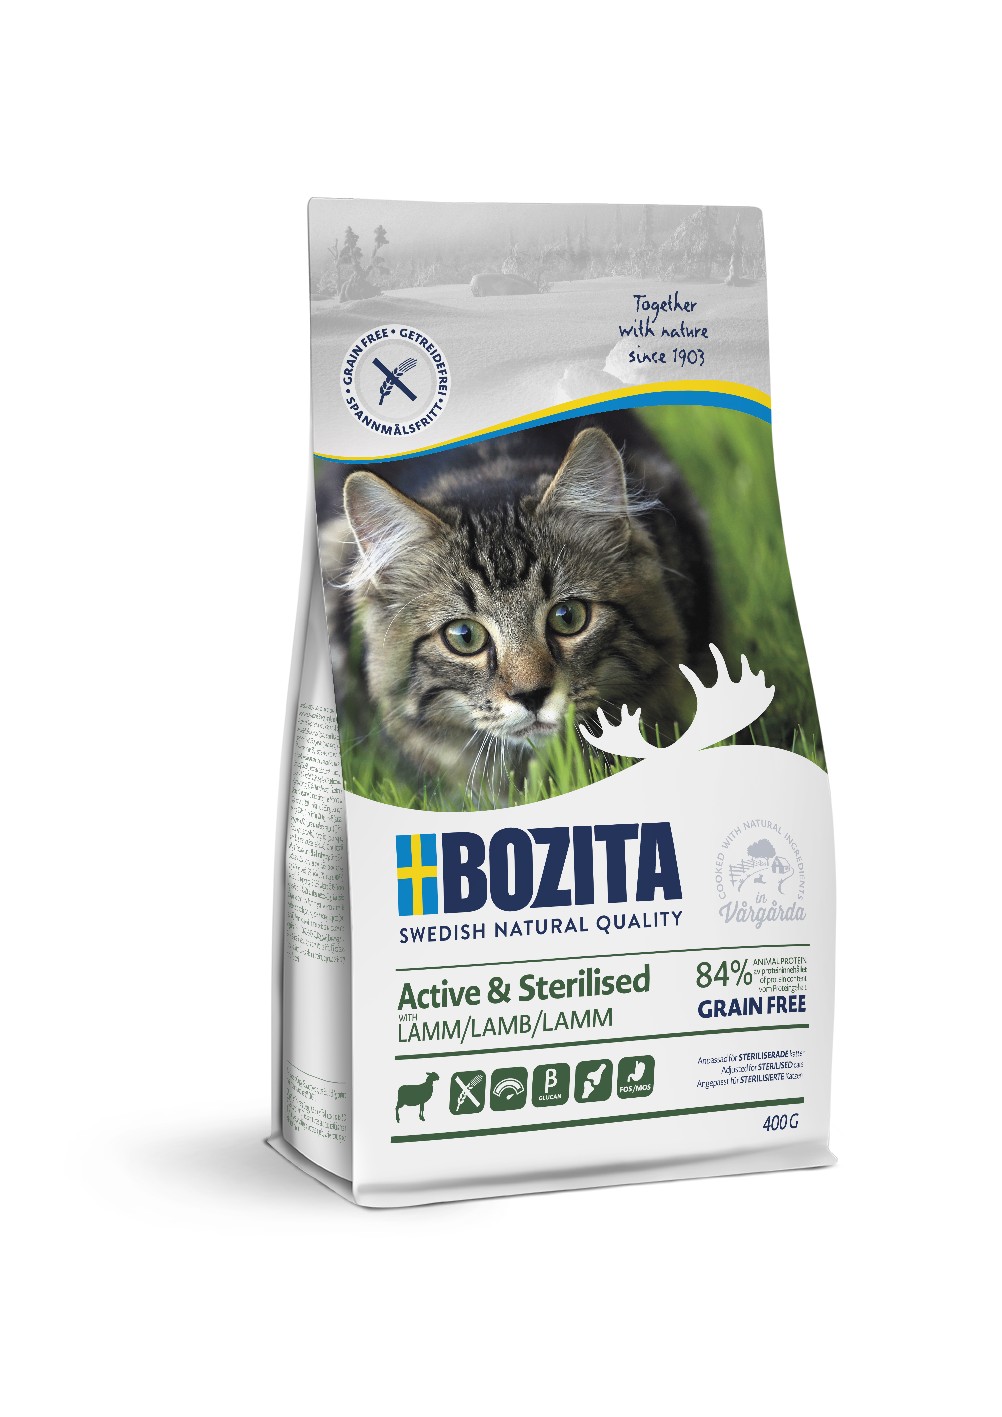 Bozita Active & Sterilized GF Lamb сухой беззерновой корм с ягненком для активных стерилизованных кошек, 400г